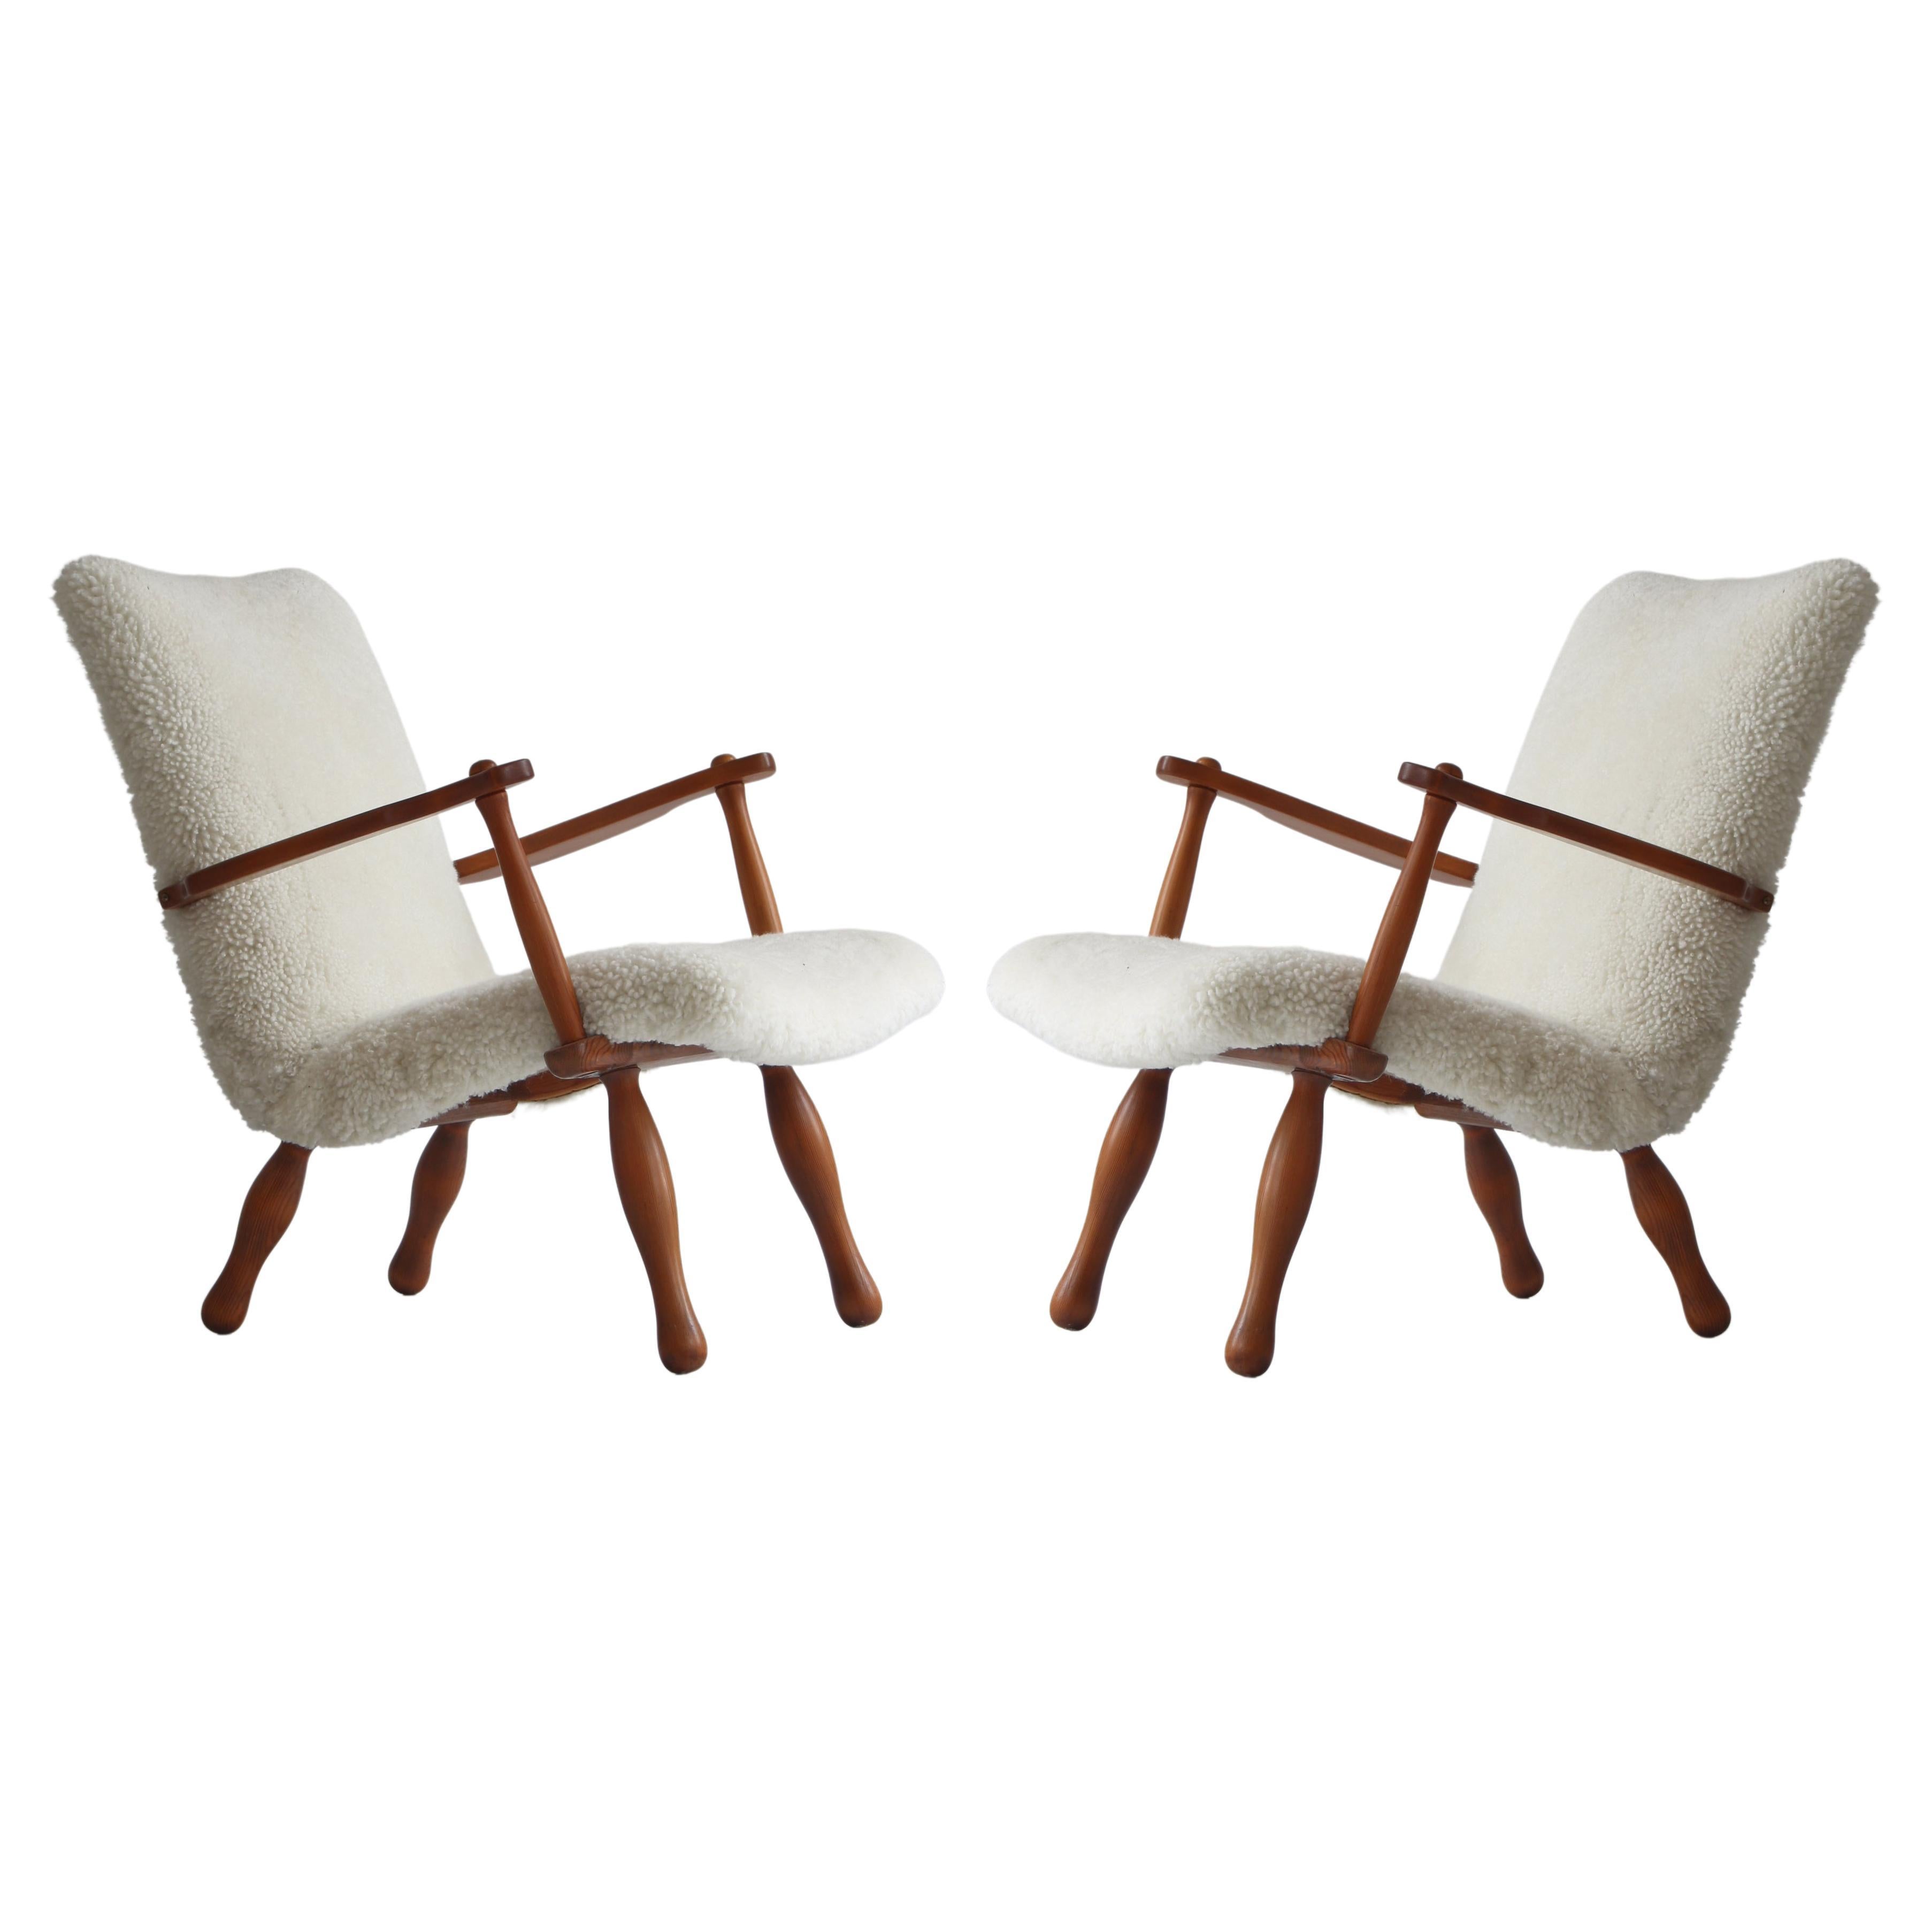 1940´s Set of Pinewood & Sheepskin Lounge Chairs by Swedish Cabinetmaker